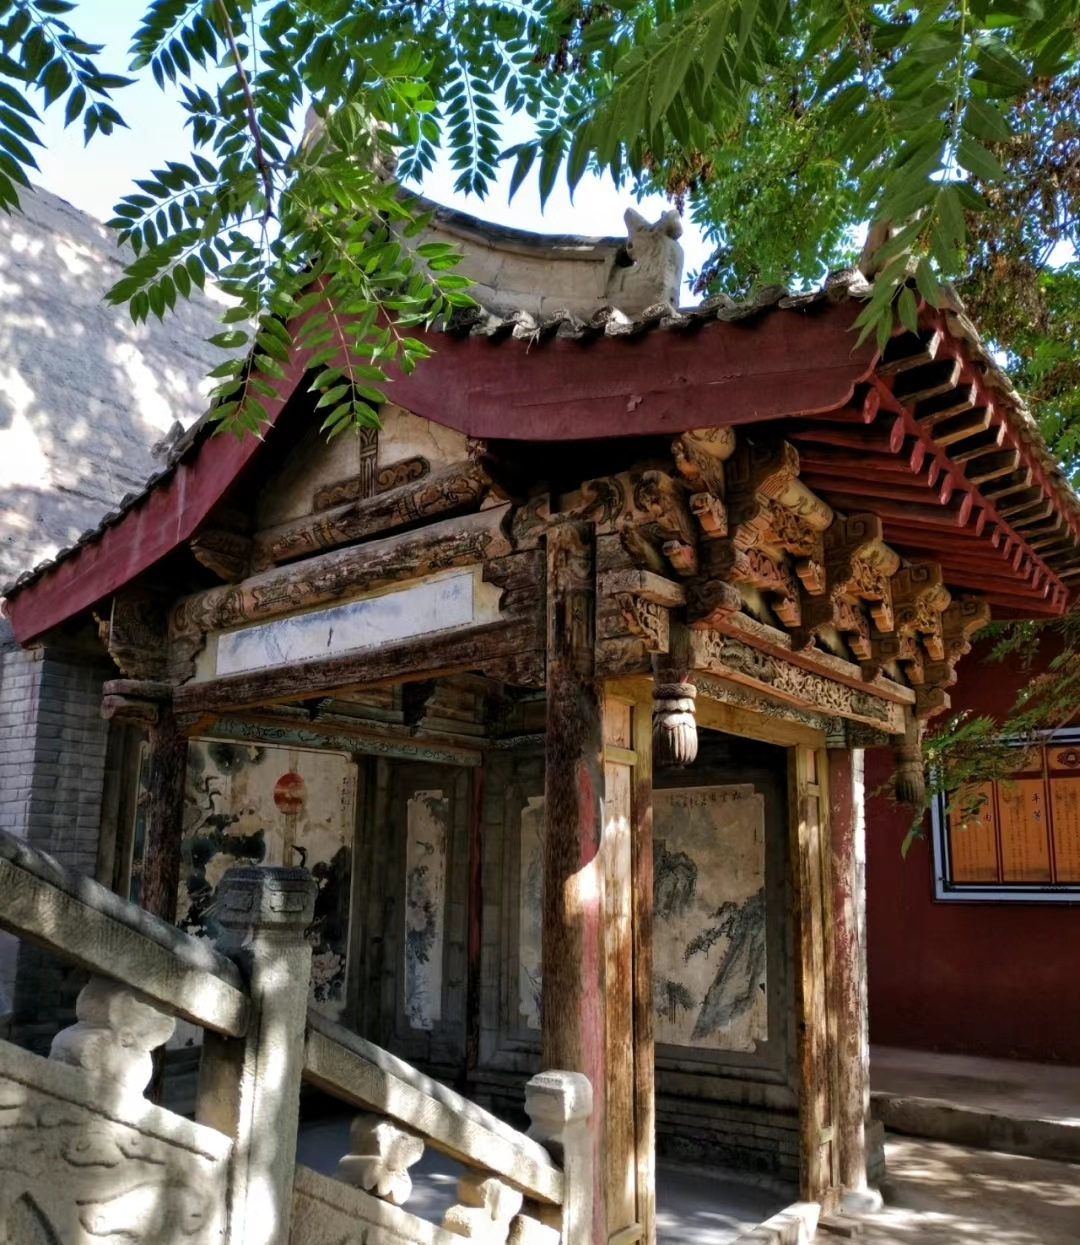 海藏寺:始建于东晋太兴四年(321年),凉州刺史张茂建造